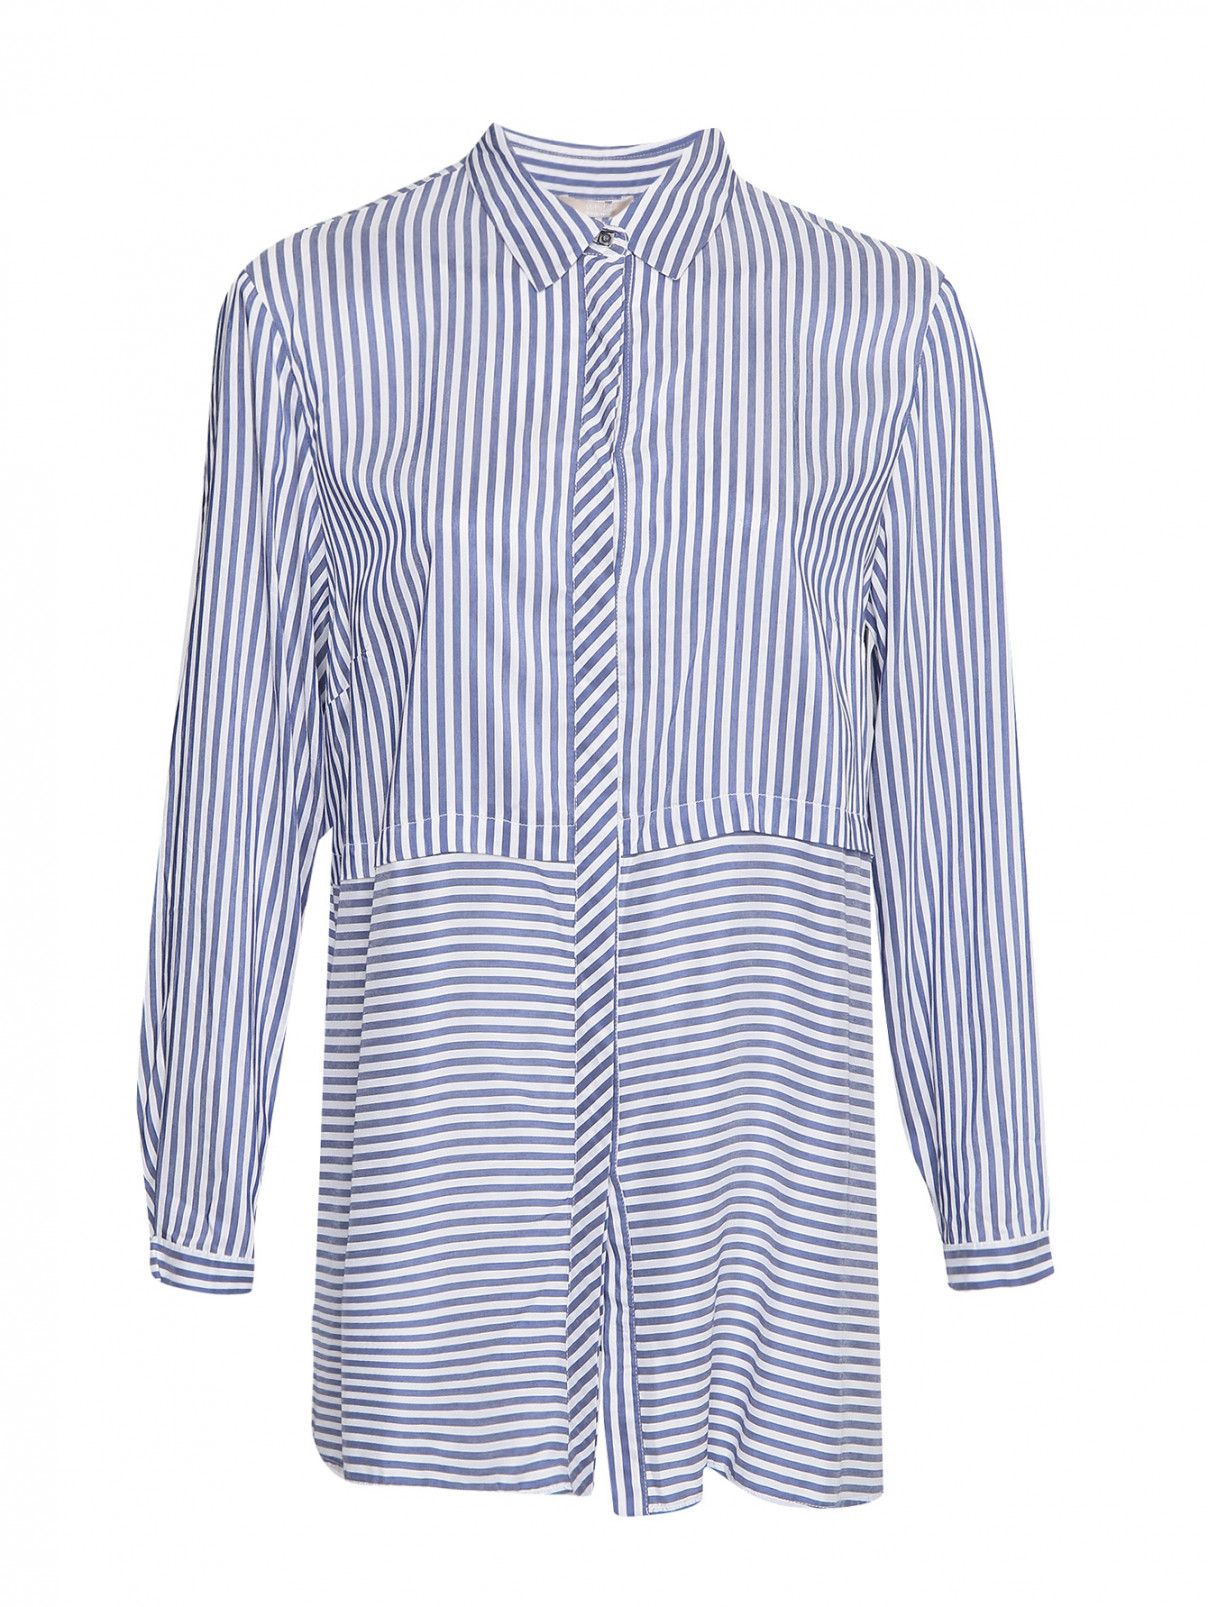 Удлиненная рубашка с узором полоска Elena Miro  –  Общий вид  – Цвет:  Синий